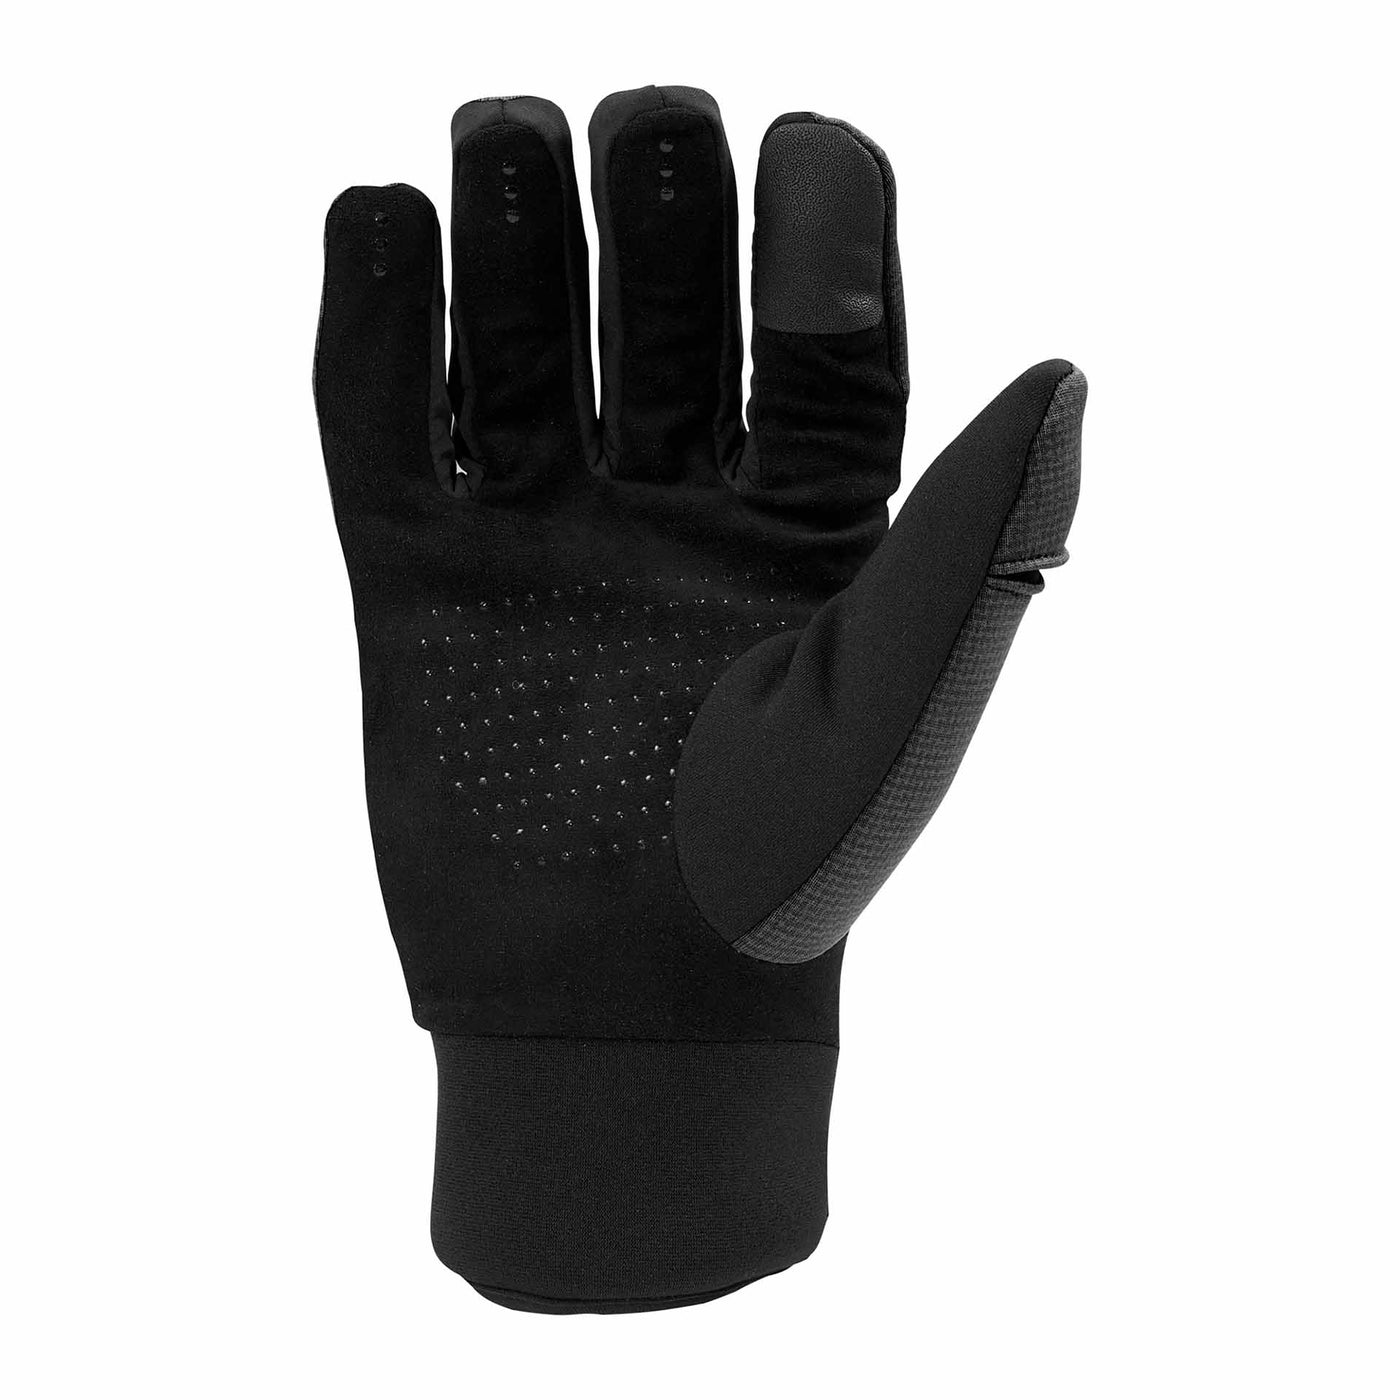 Watersheild Gloves